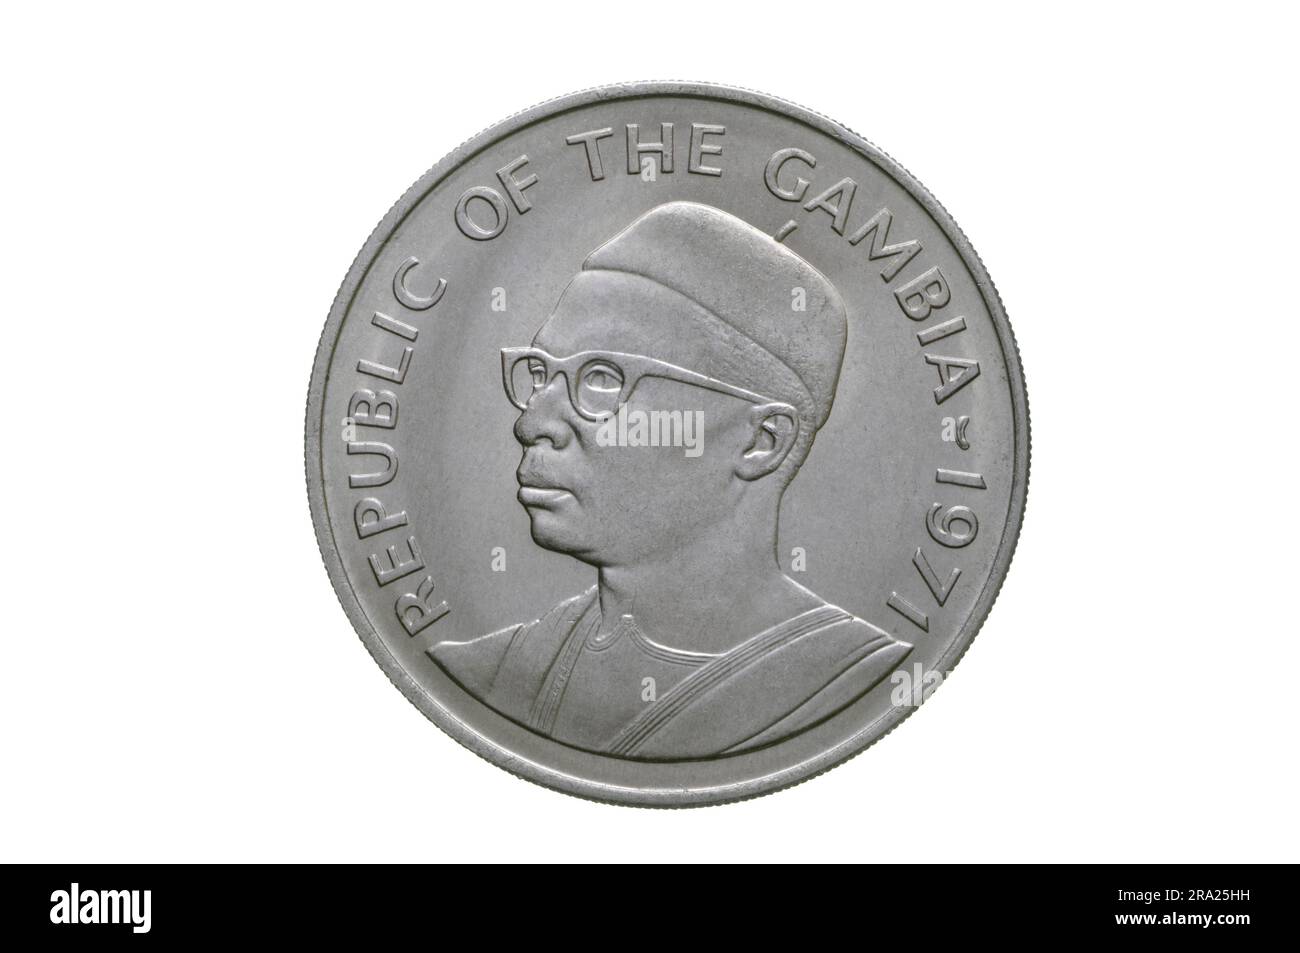 Repubblica del GAMBIA 1 Dalasi Coin 1971 Foto Stock